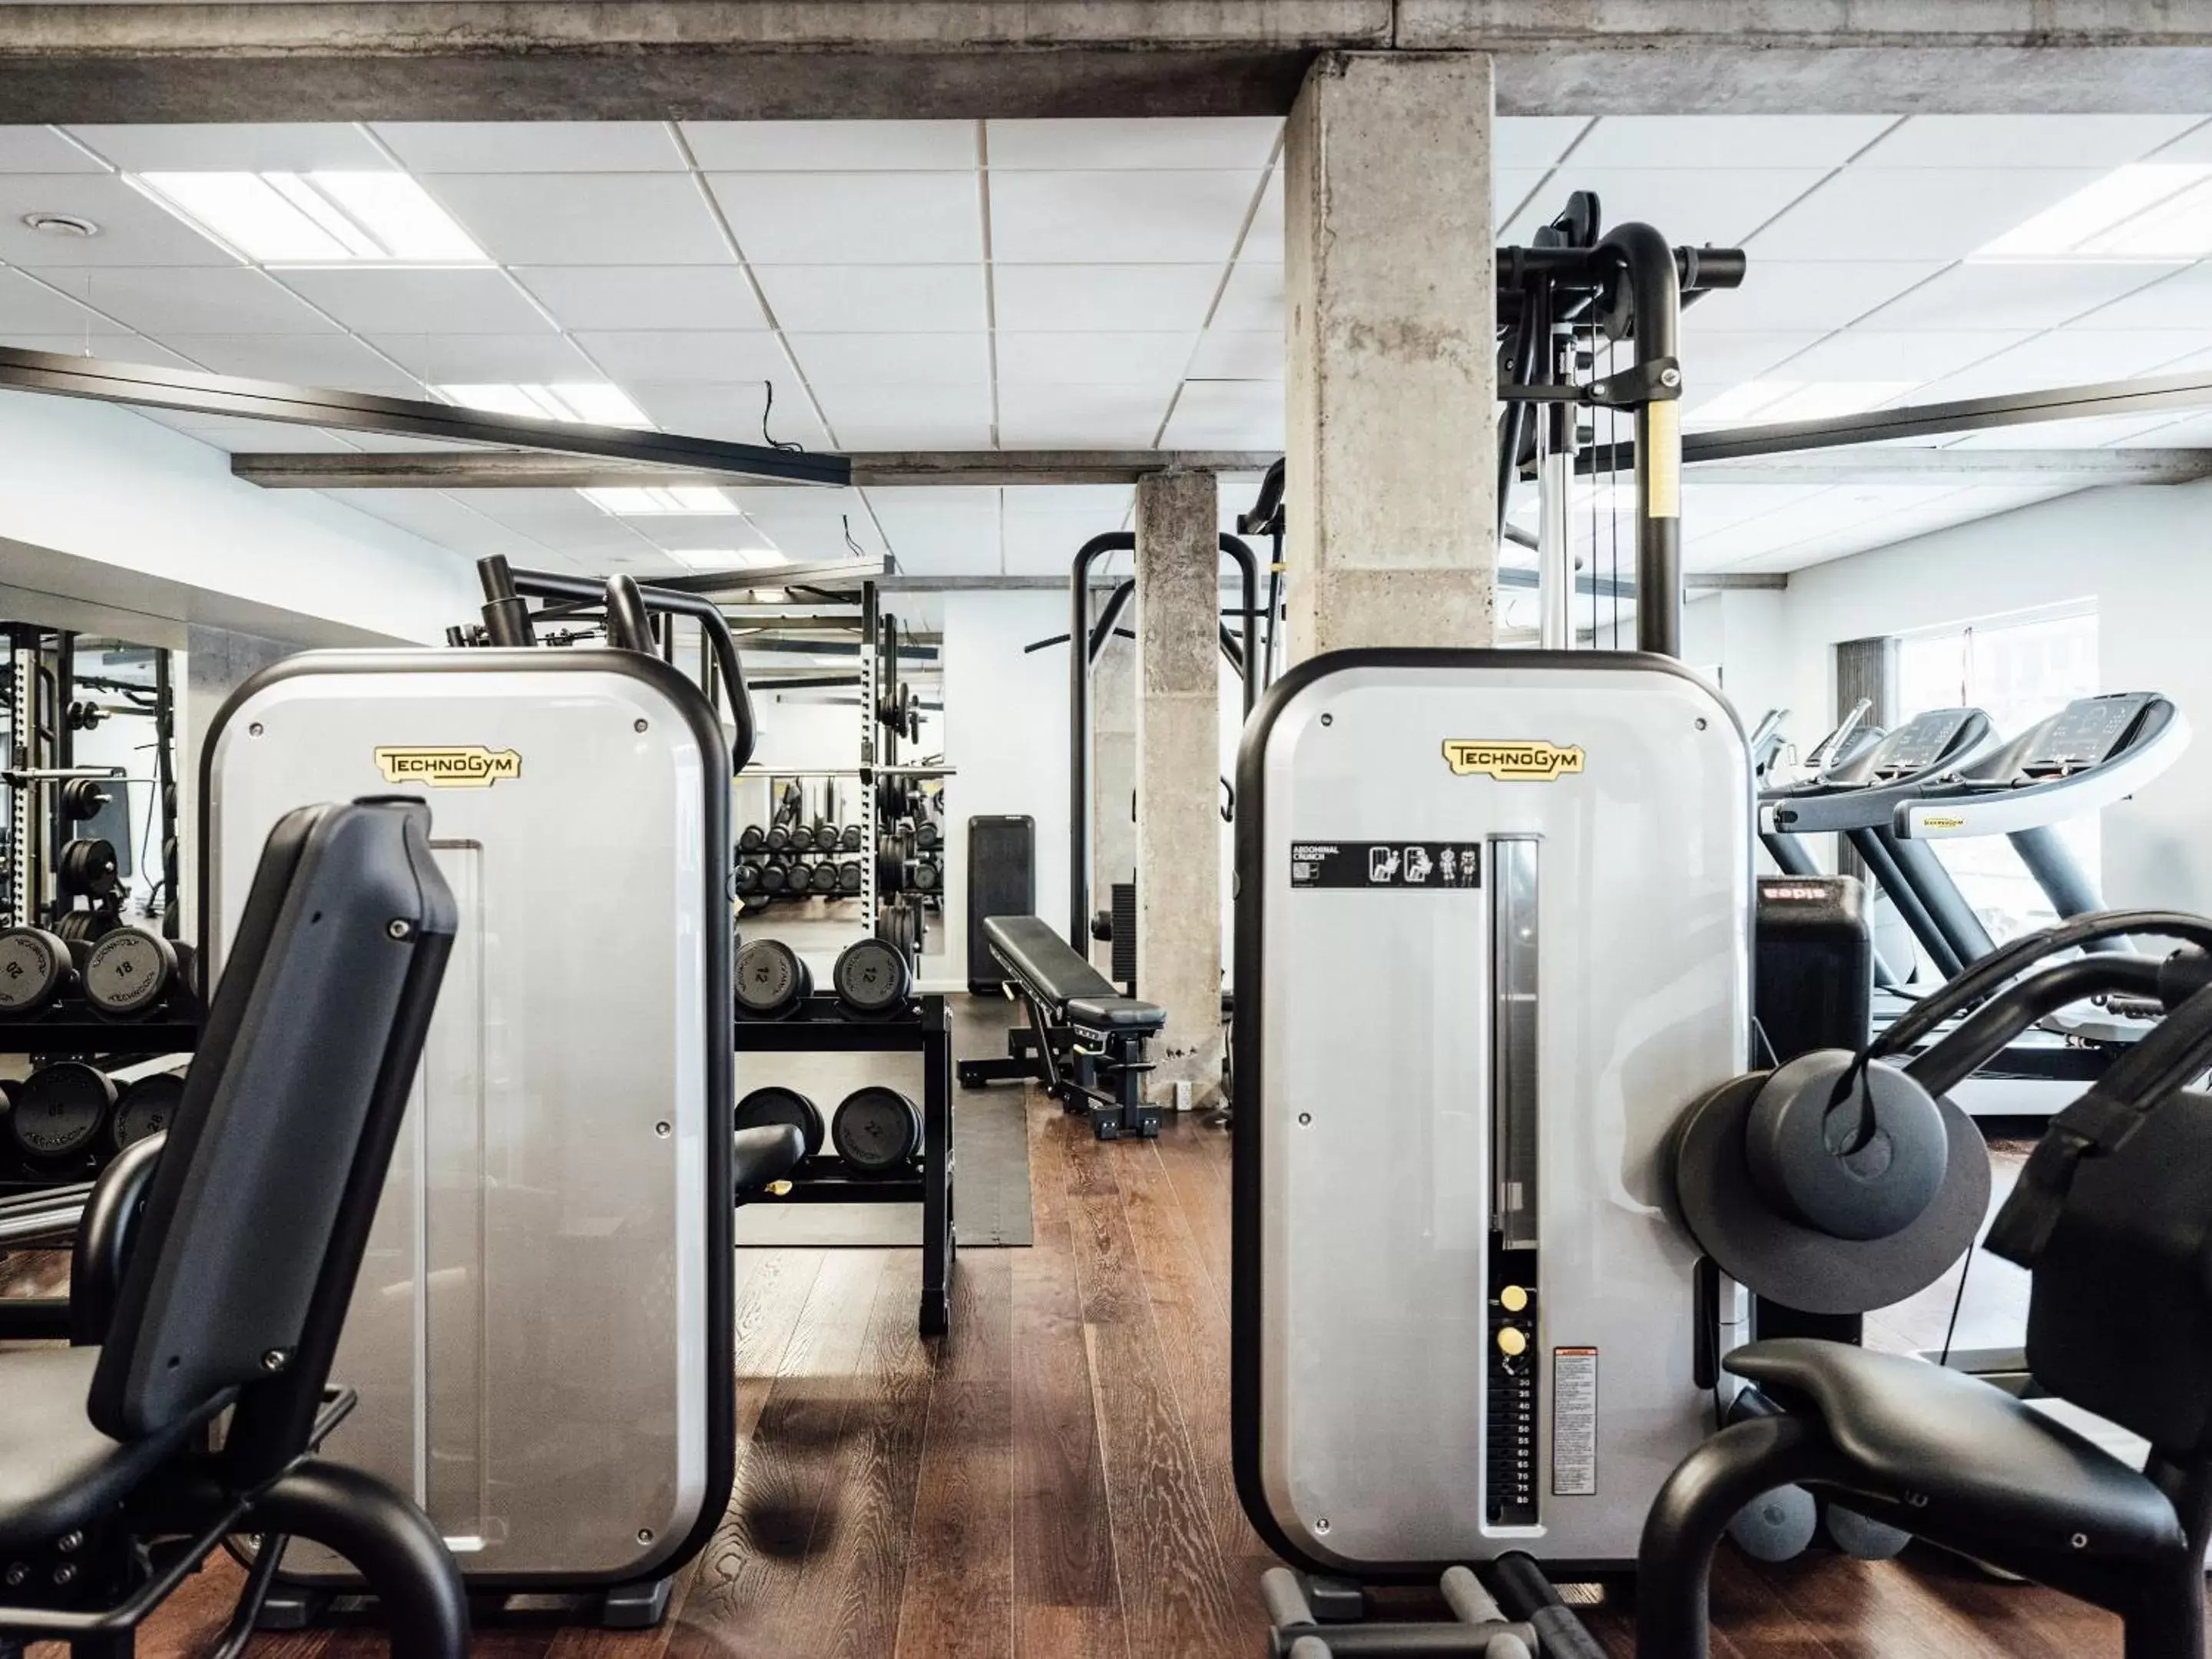 Fitness centre/facilities, Fitness Center/Facilities in Hotel Føroyar